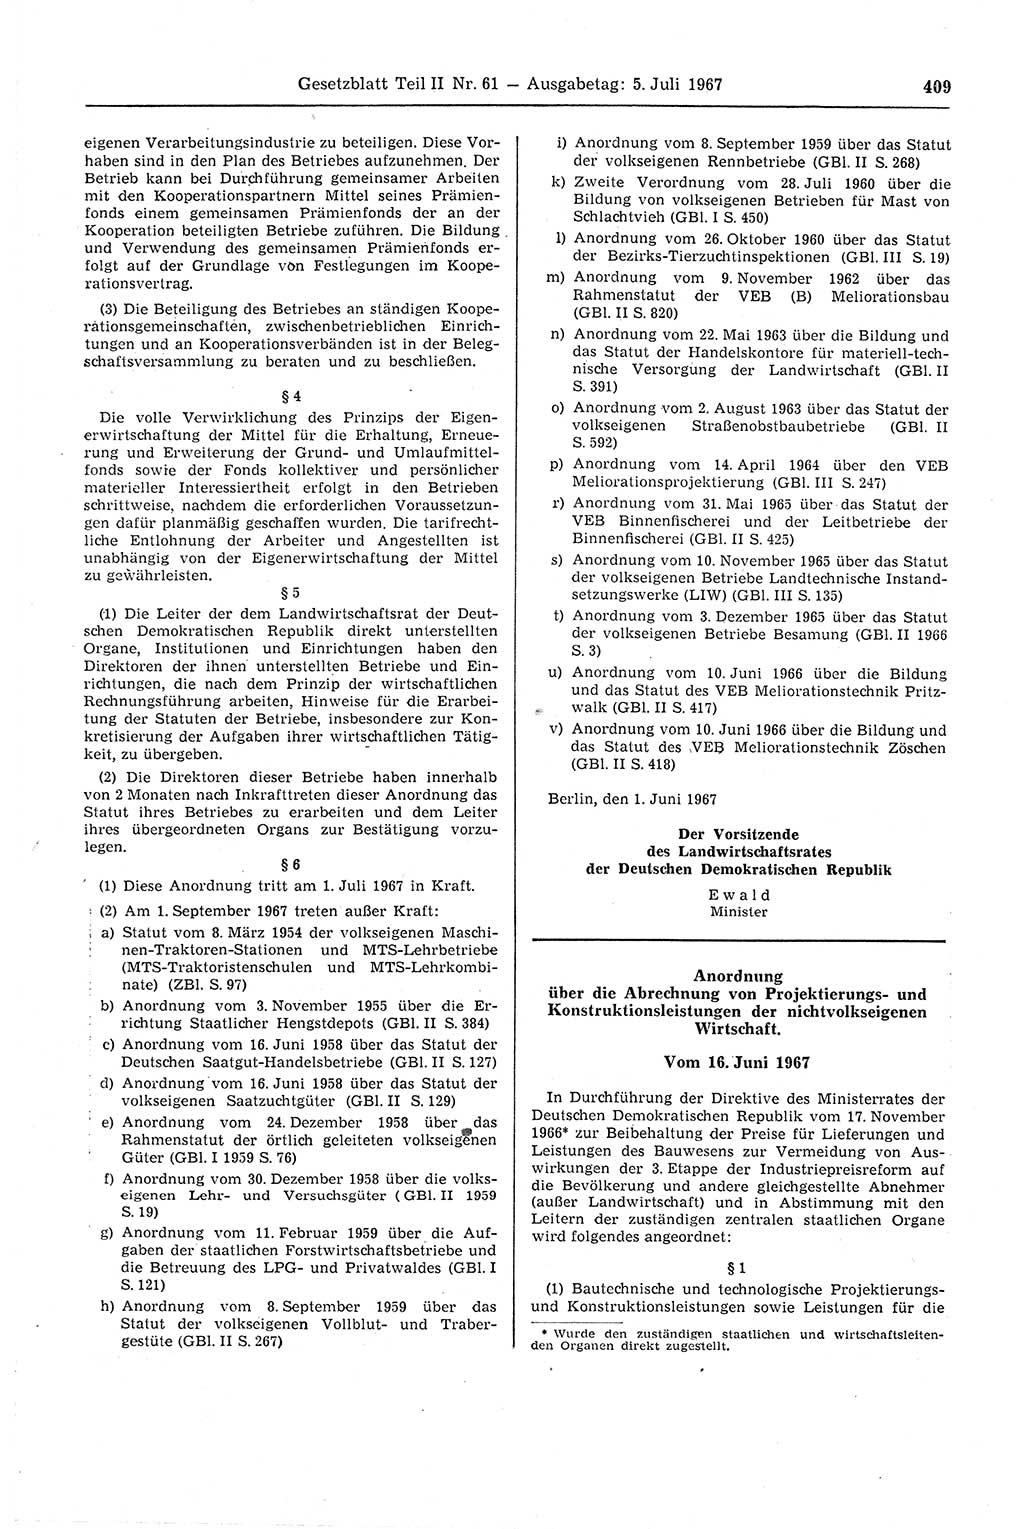 Gesetzblatt (GBl.) der Deutschen Demokratischen Republik (DDR) Teil ⅠⅠ 1967, Seite 409 (GBl. DDR ⅠⅠ 1967, S. 409)